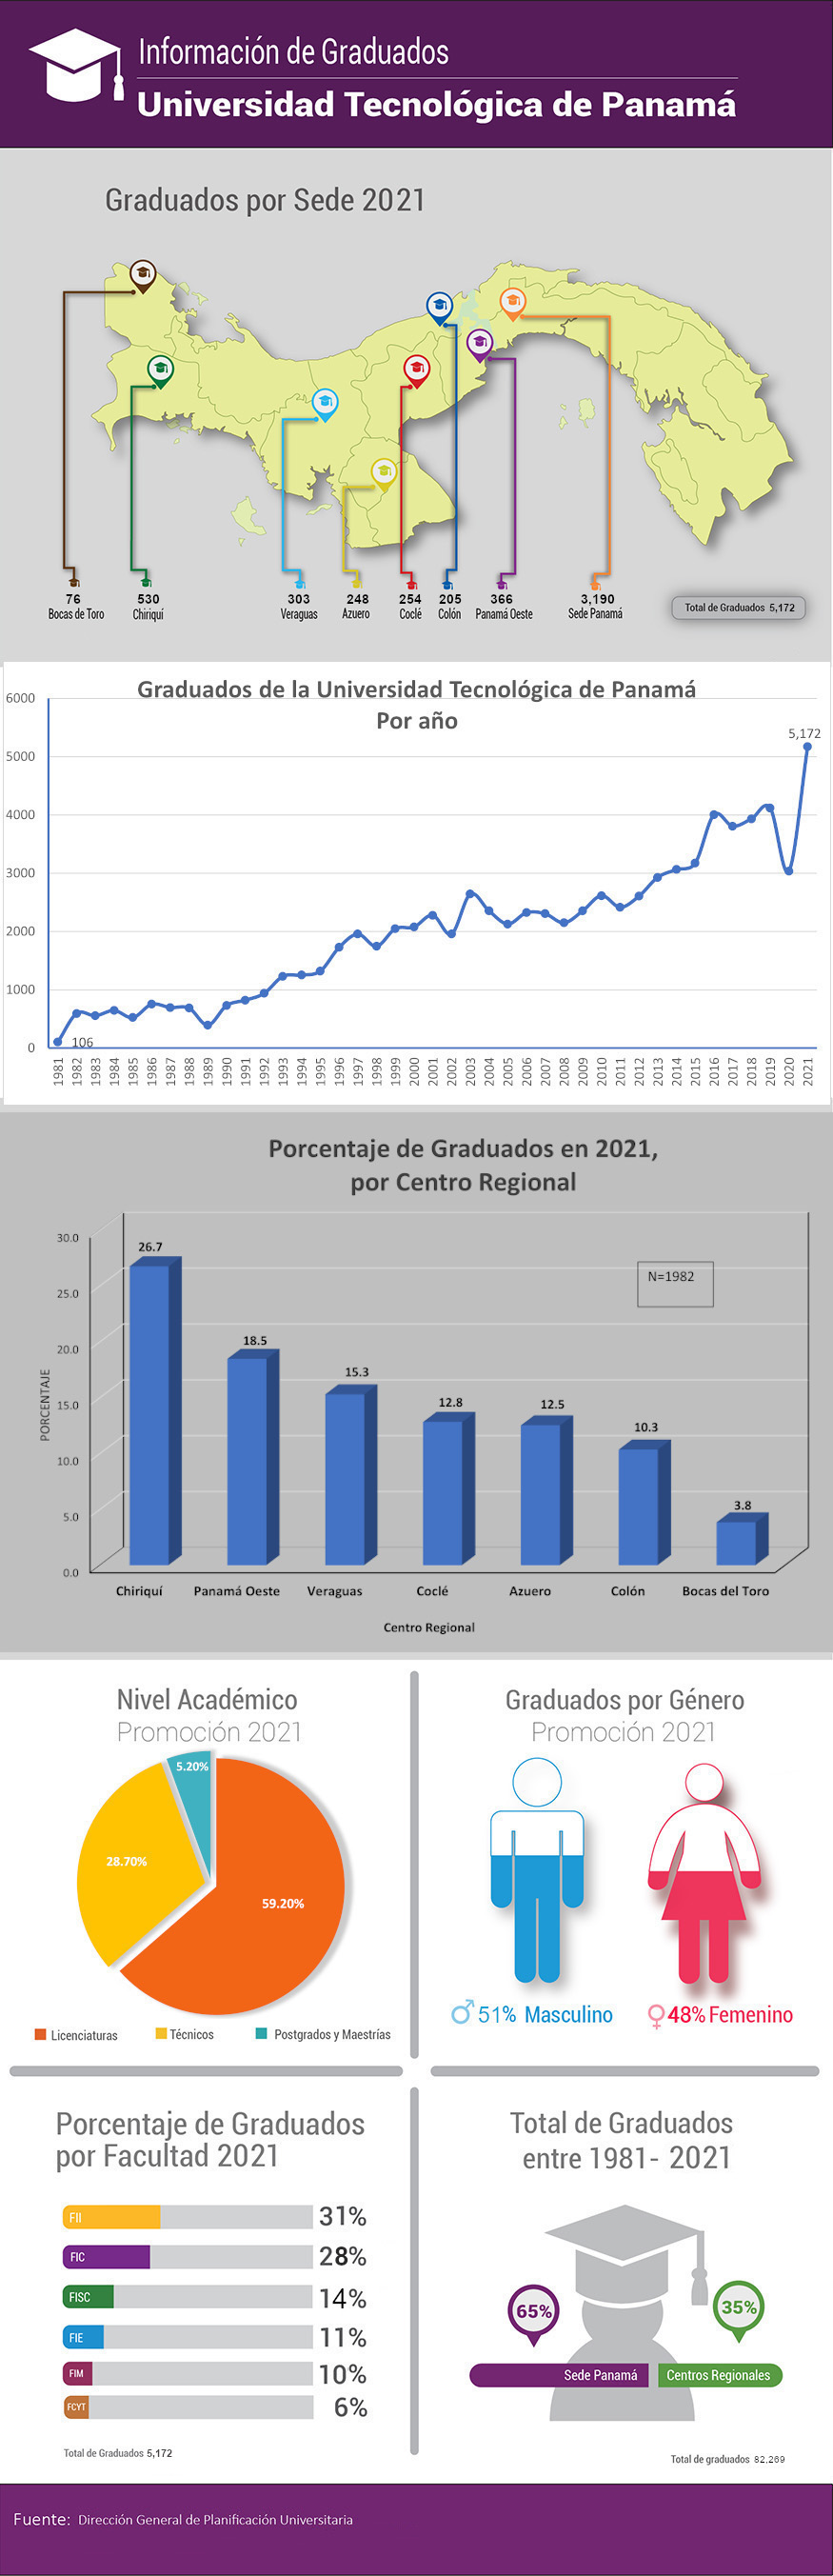 Infografía de graduados por sede de la Universidad Tecnológica de Panamá.